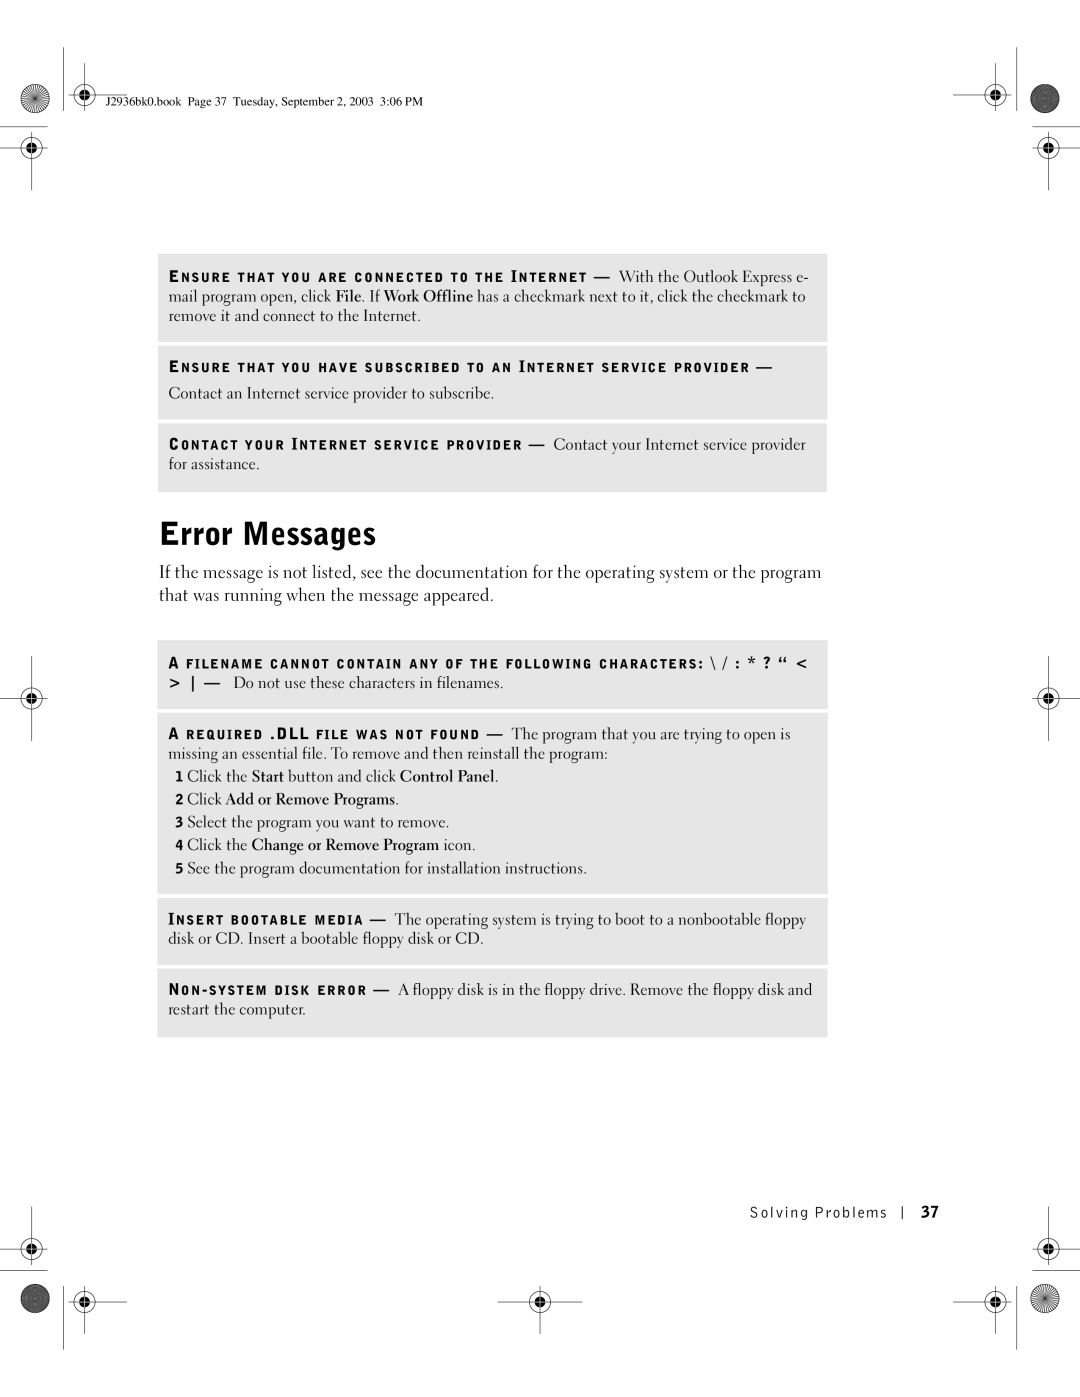 Dell J2936 manual Error Messages 